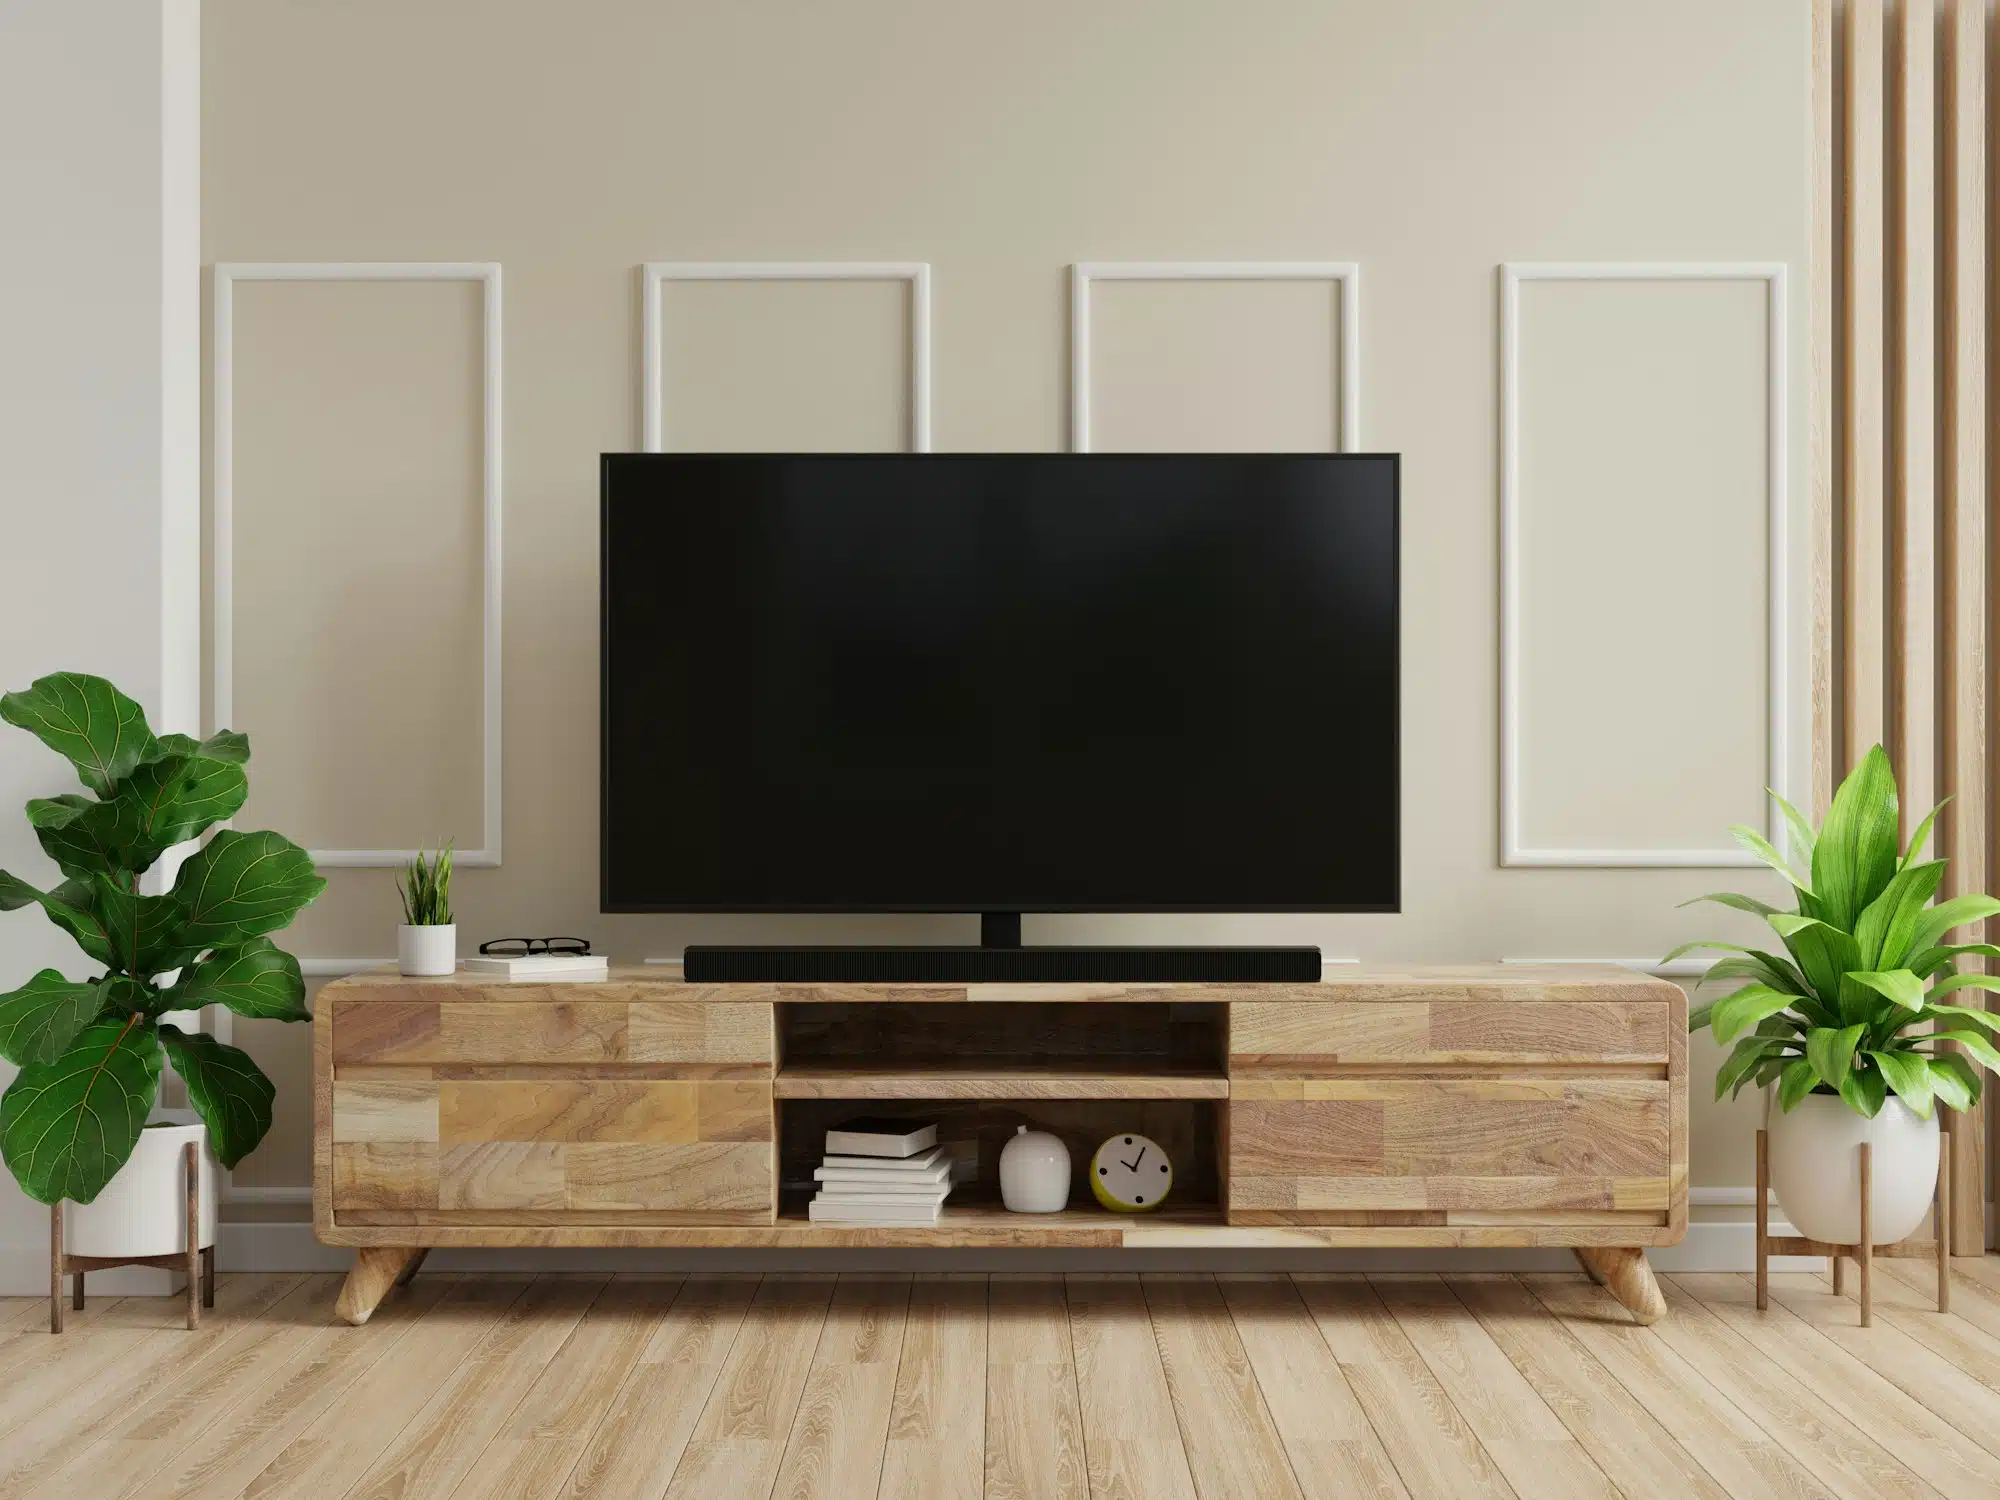 Meubles pour décorer et aménager son intérieur : optez pour un meuble TV